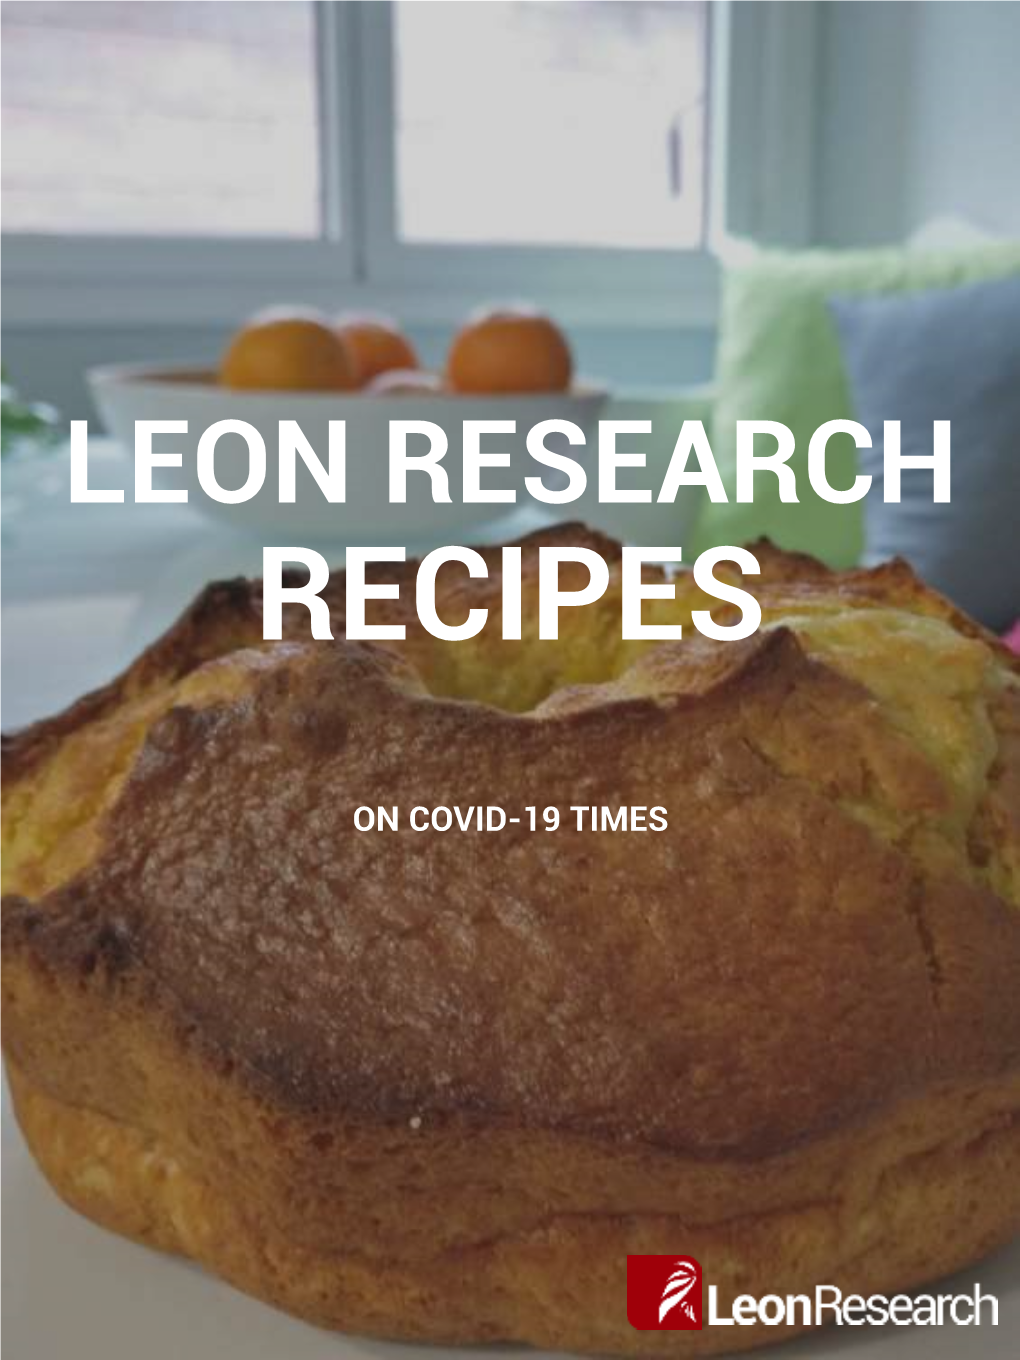 Leon Research Recipes